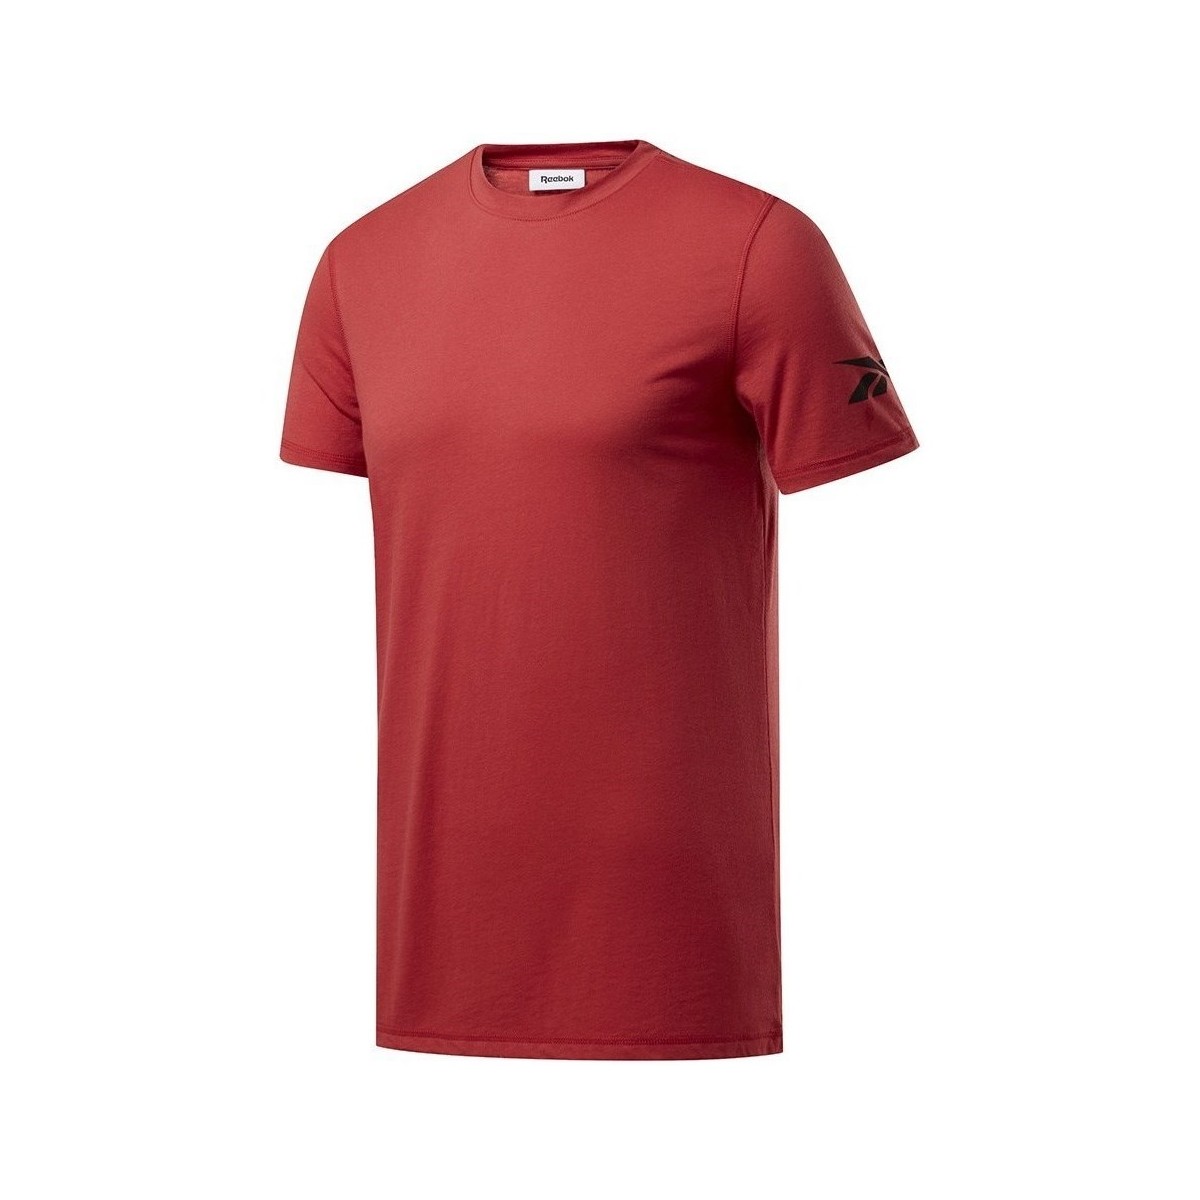 Vêtements Homme T-shirts manches courtes Reebok Sport Wor WE Commercial Tee Bordeaux